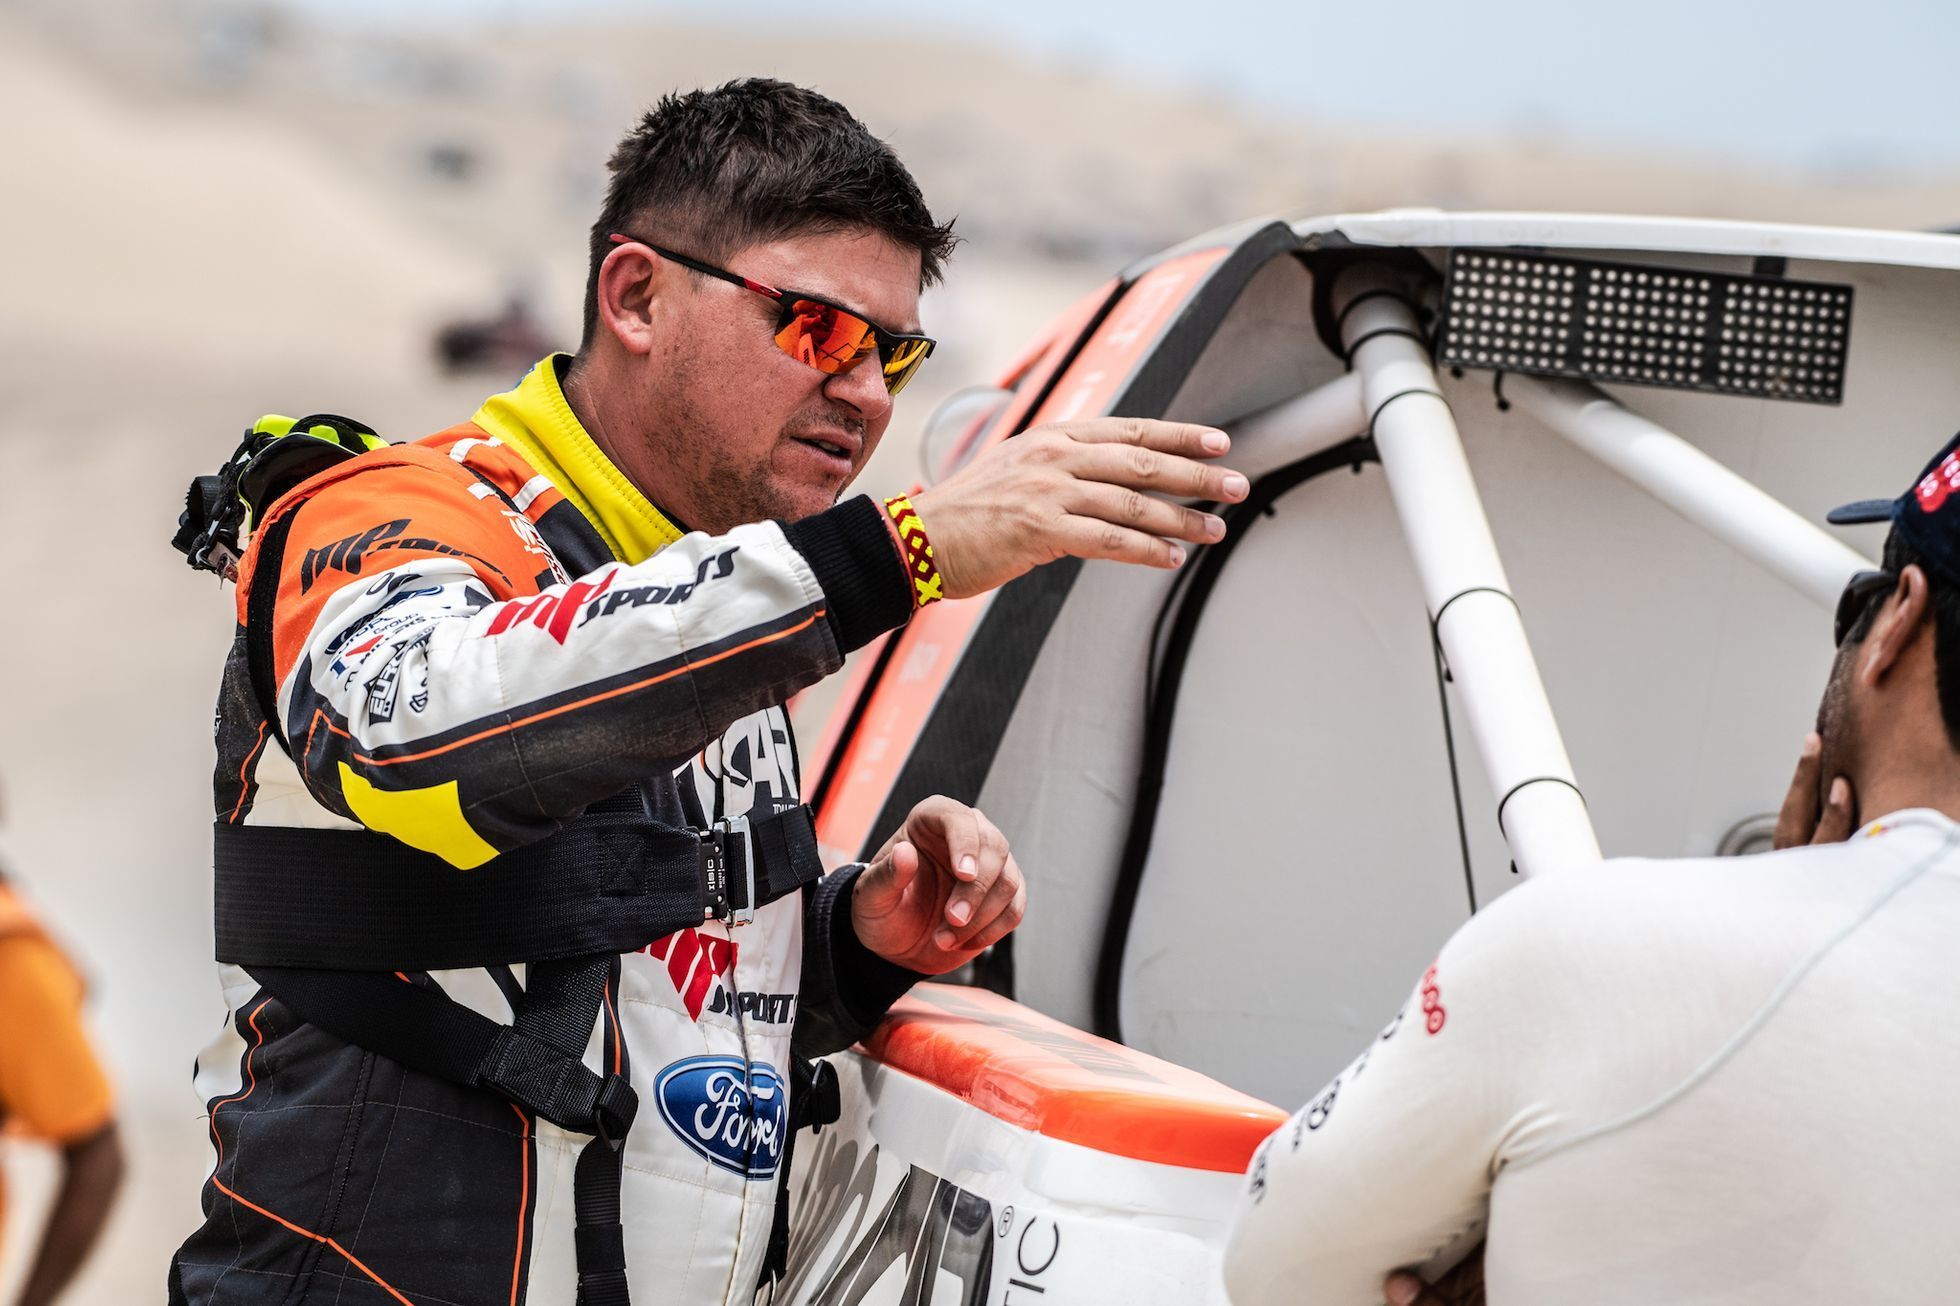 Martin Prokop na Rallye Dakar 2019